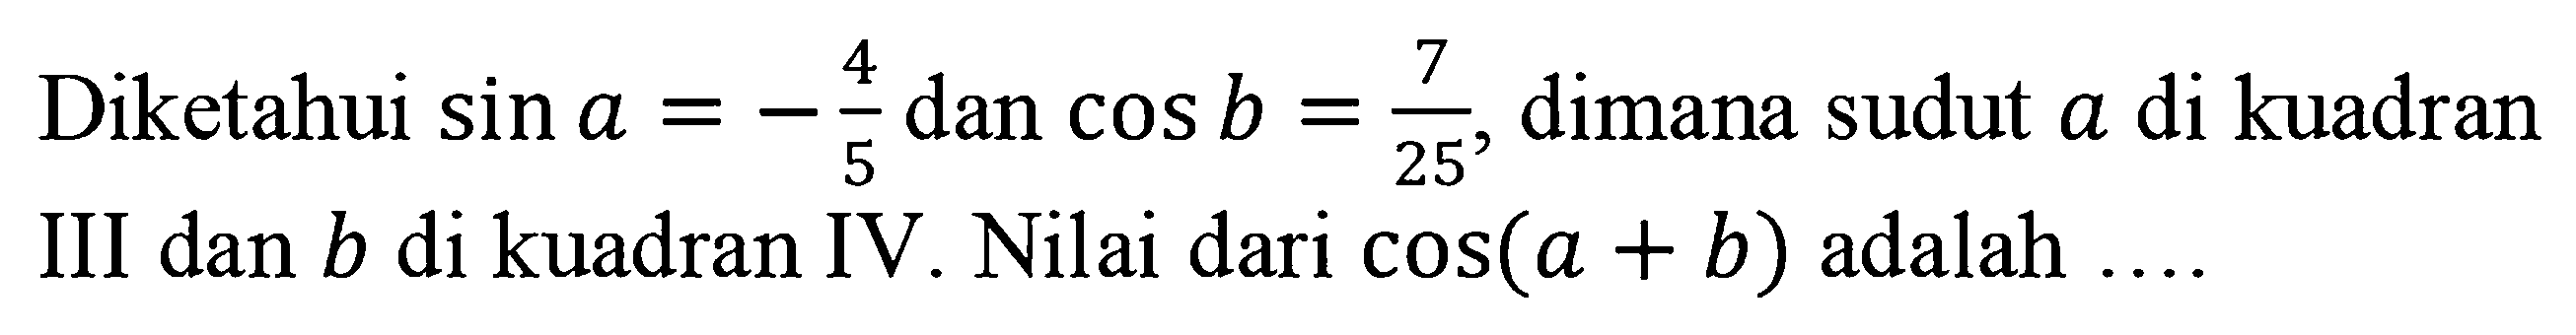 Diketahui sin a=-4/5 dan cos b=7/25, dimana sudut a di kuadran III dan b di kuadran IV. Nilai dari cos(a+b) adalah ....